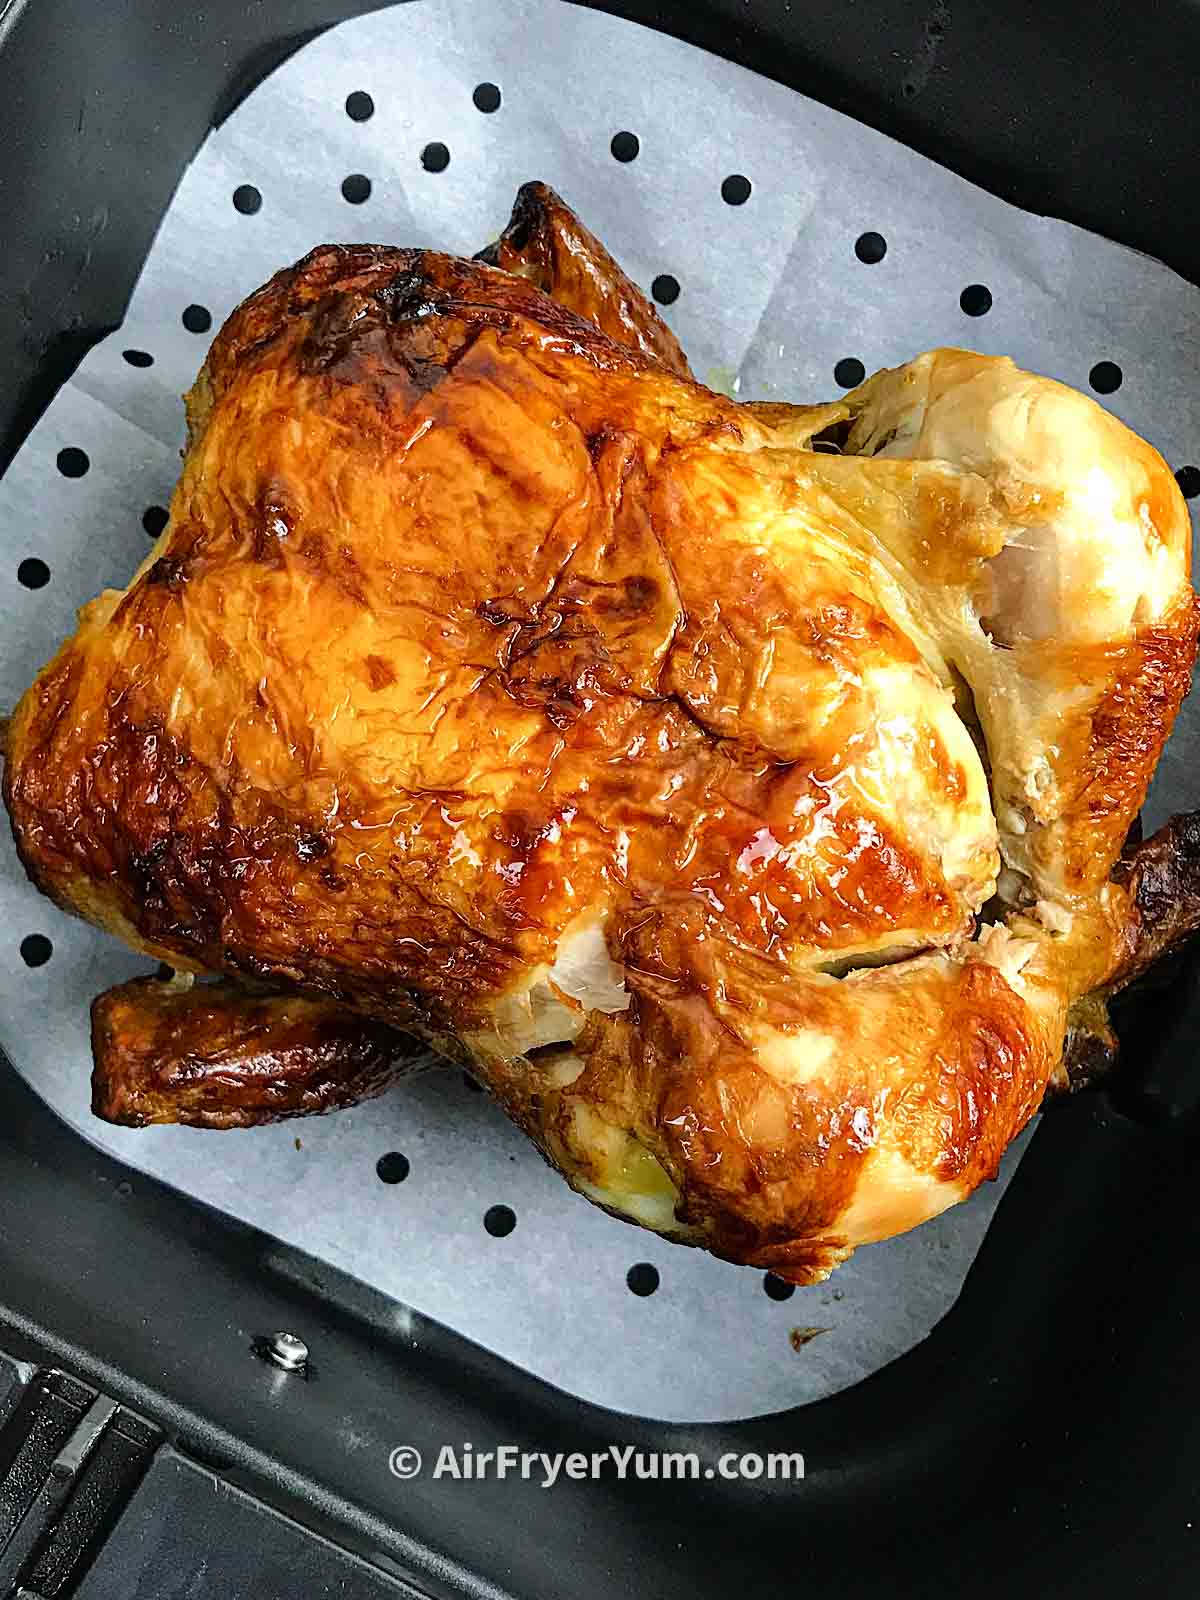 Reheat Rotisserie Chicken in Air Fryer - Budget Delicious